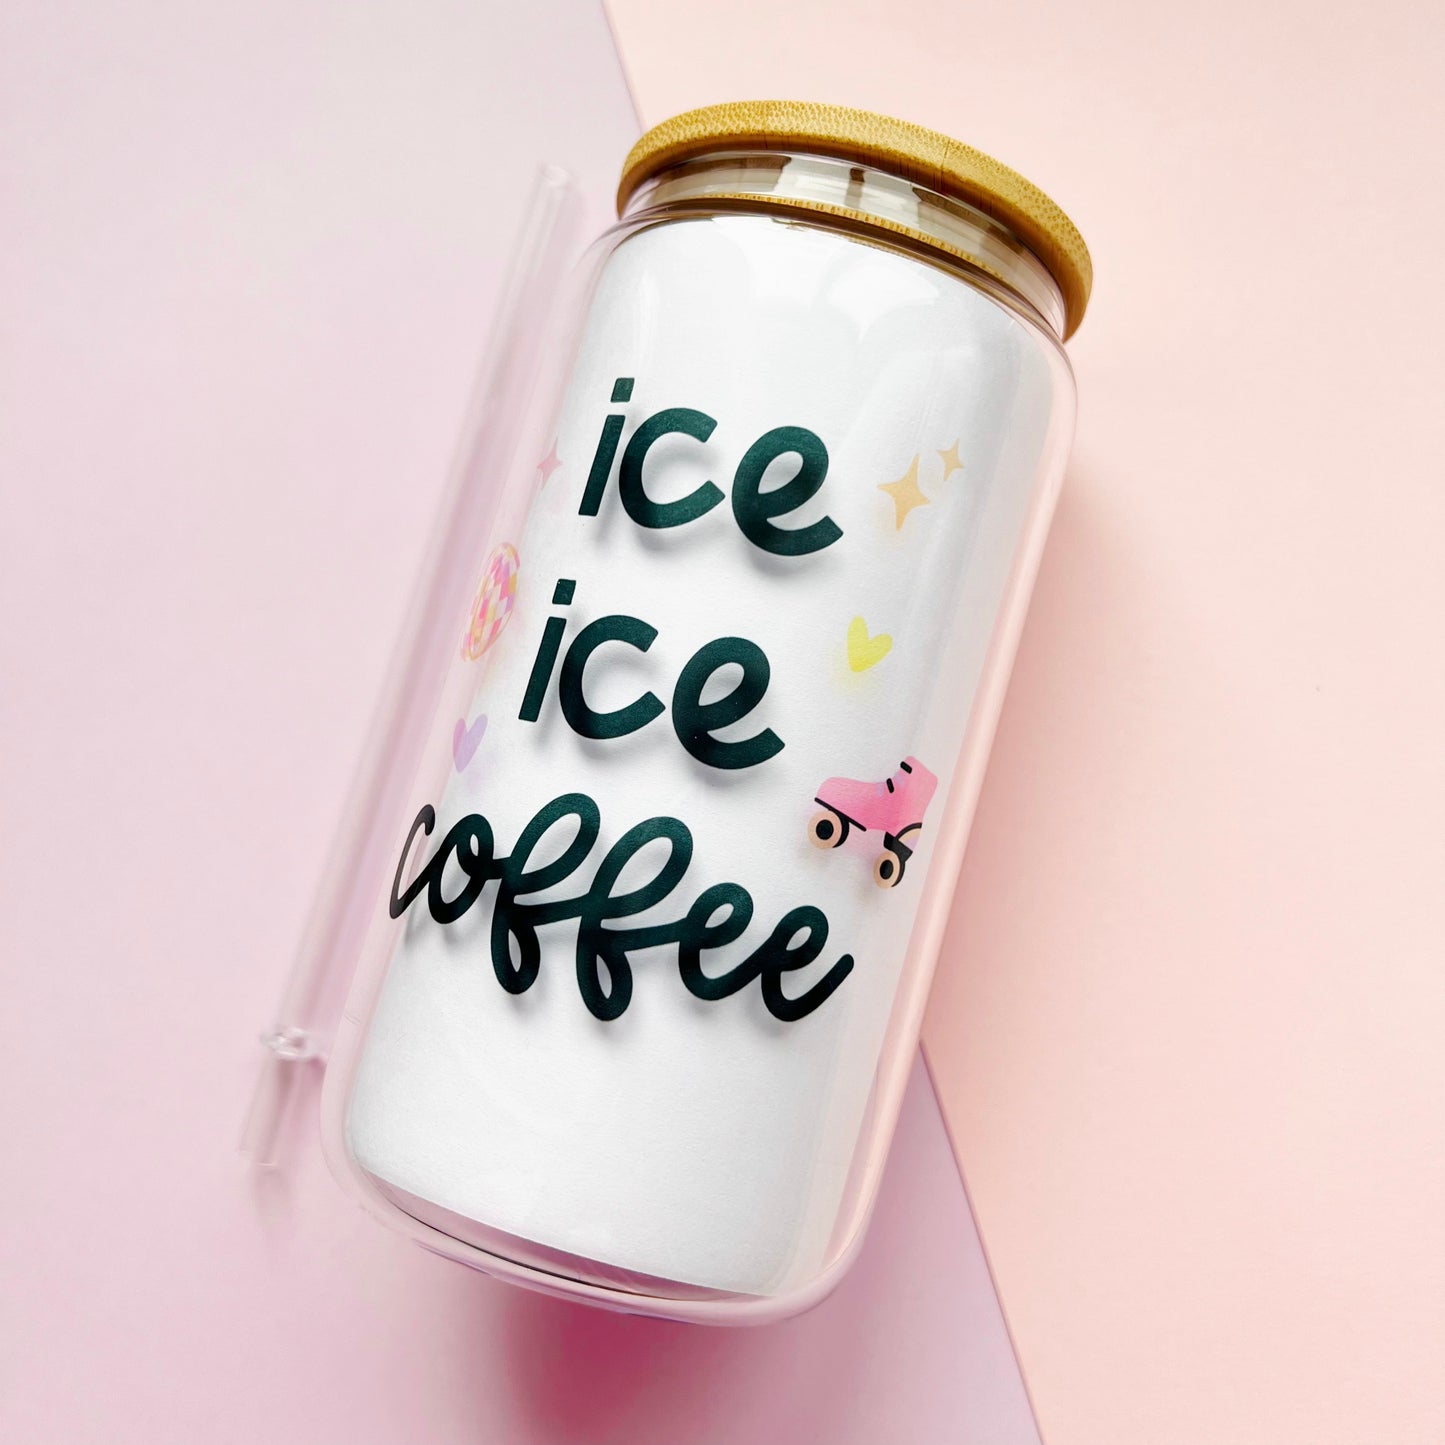 'Ice Ice Coffee' Iced Coffee Cup